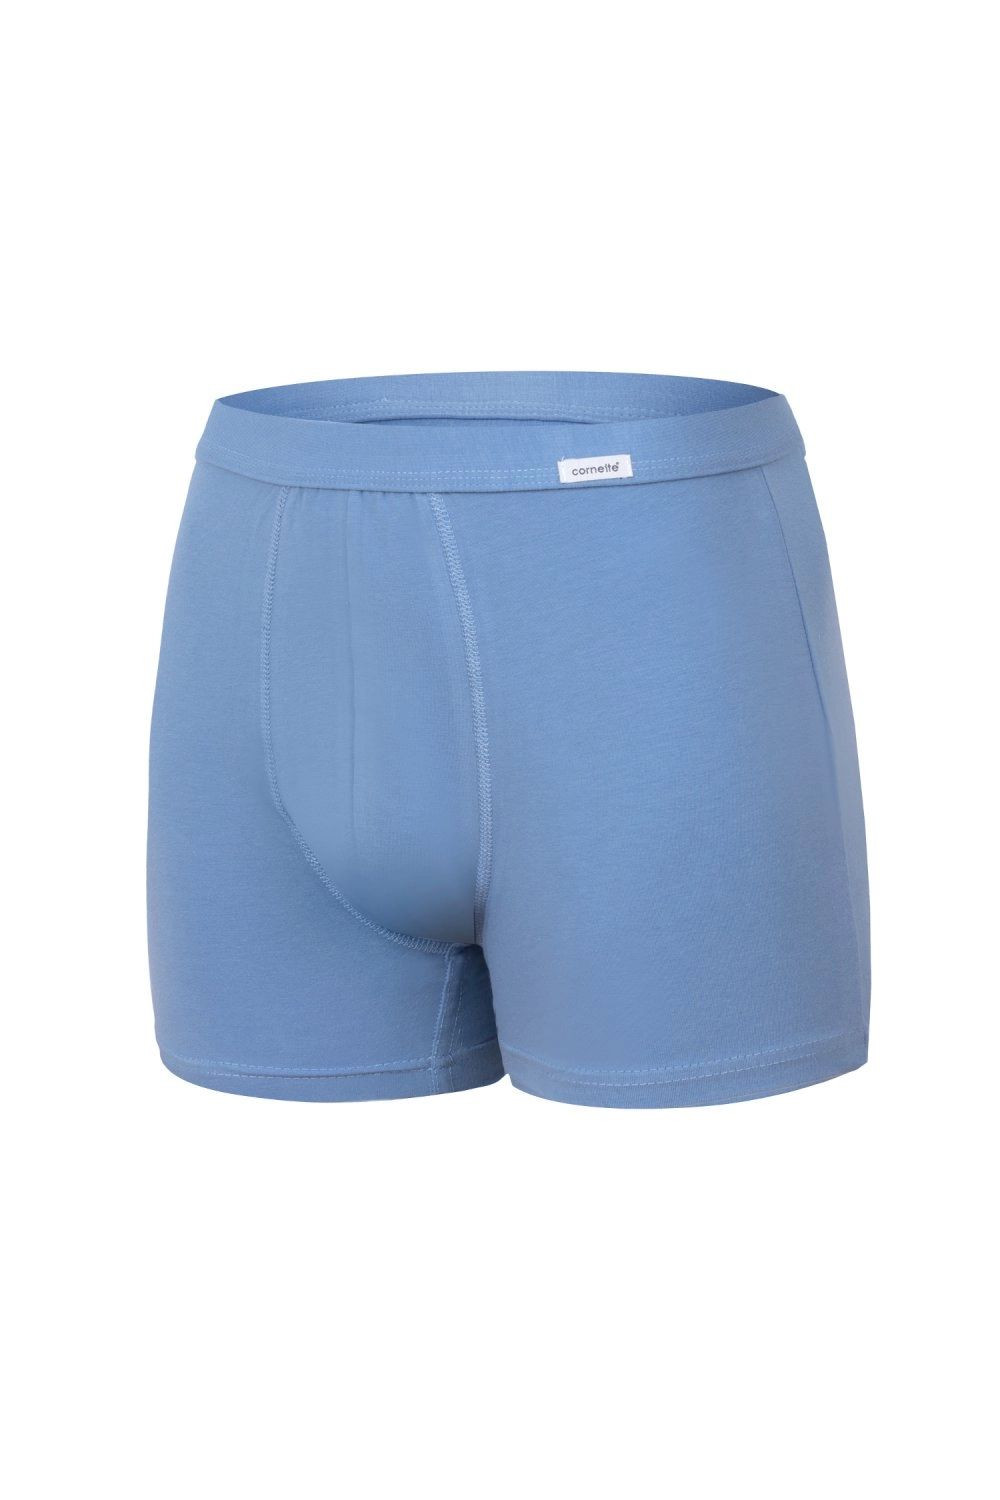 Pánské boxerky 220 Authentic light blue - CORNETTE Barva: světle modrá, Velikost: M